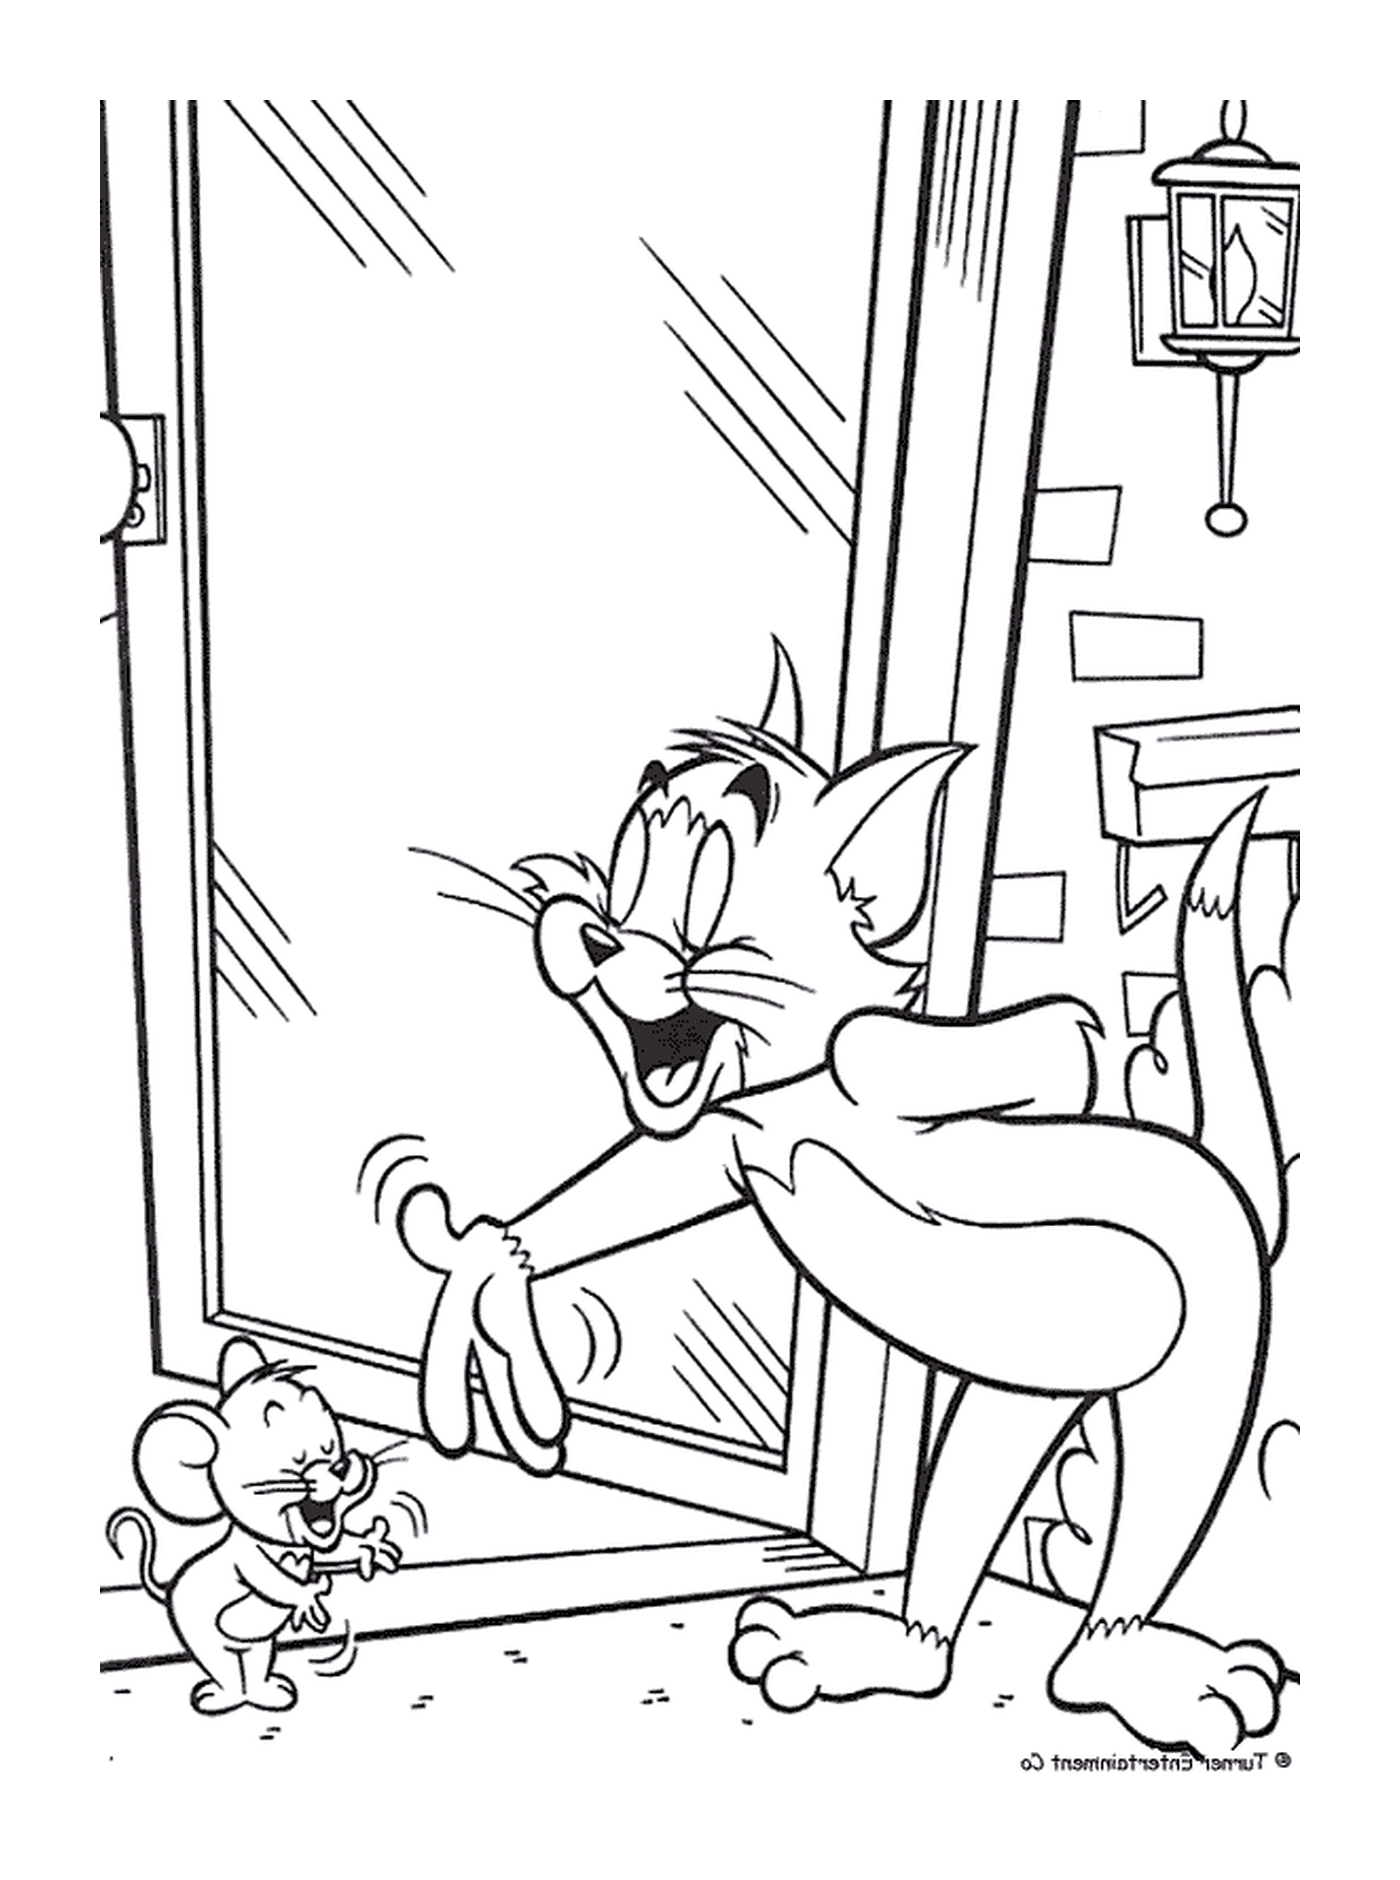  Tom y Jerry se saludan 